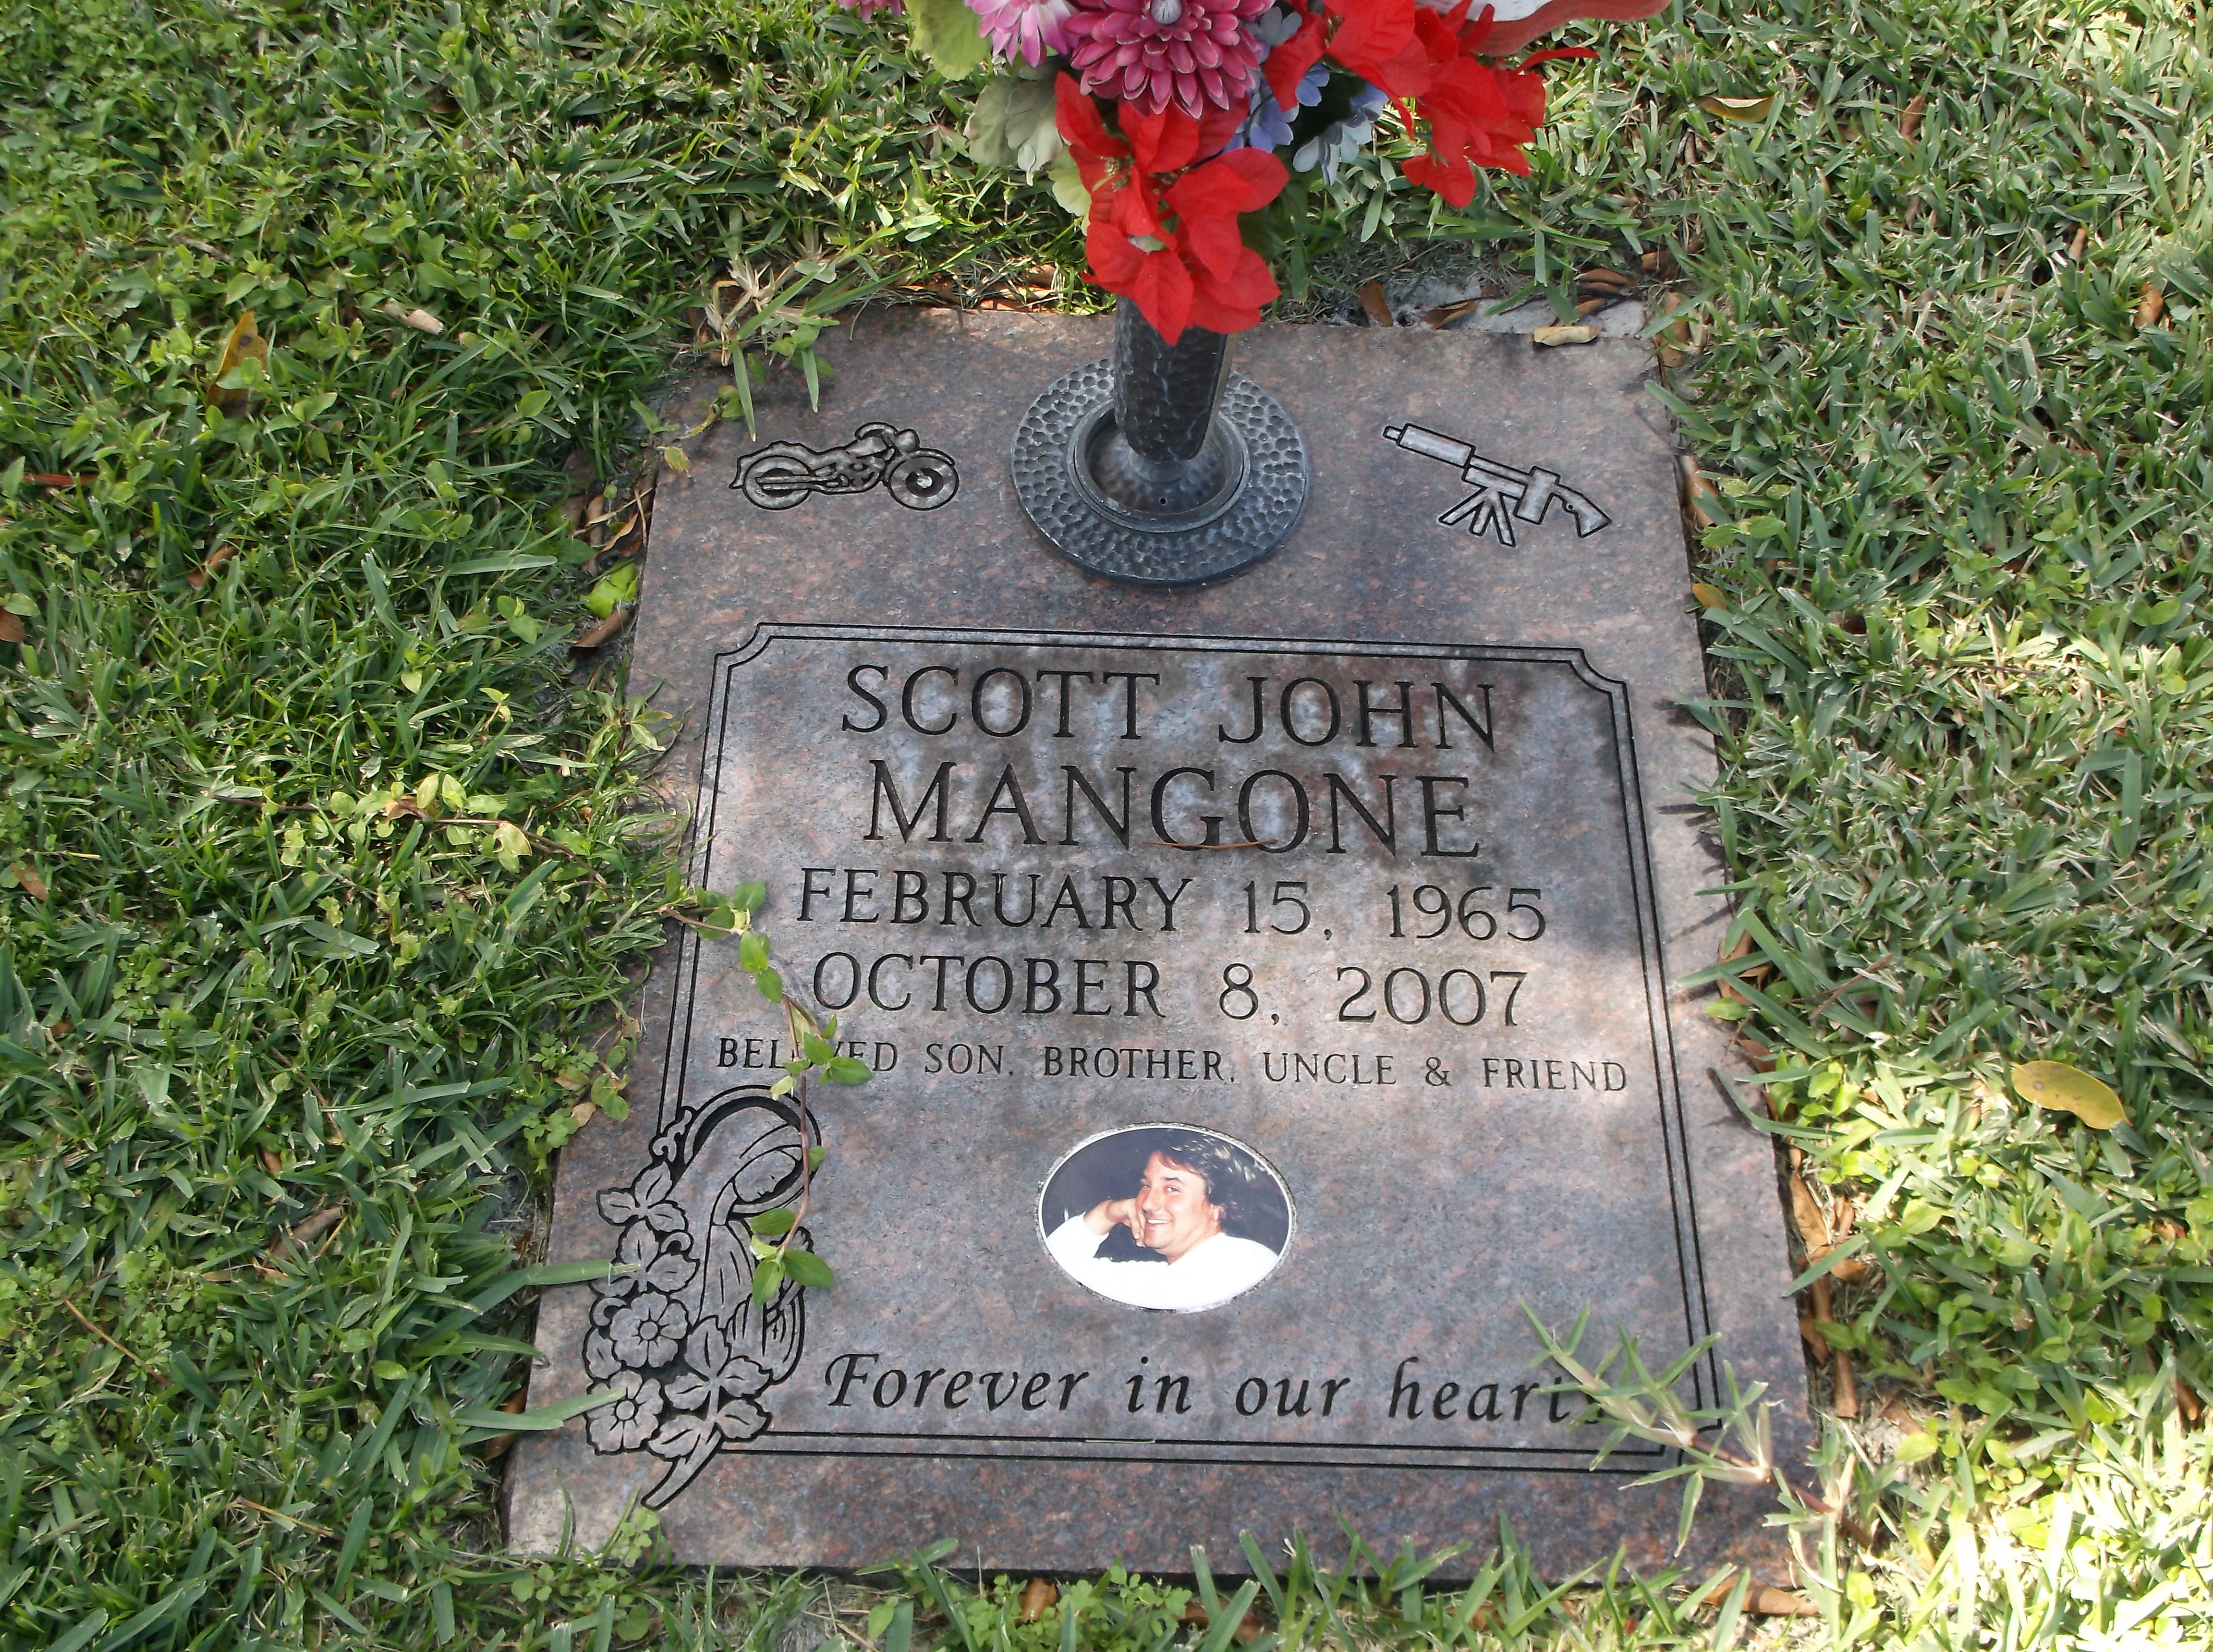 Scott John Mangone